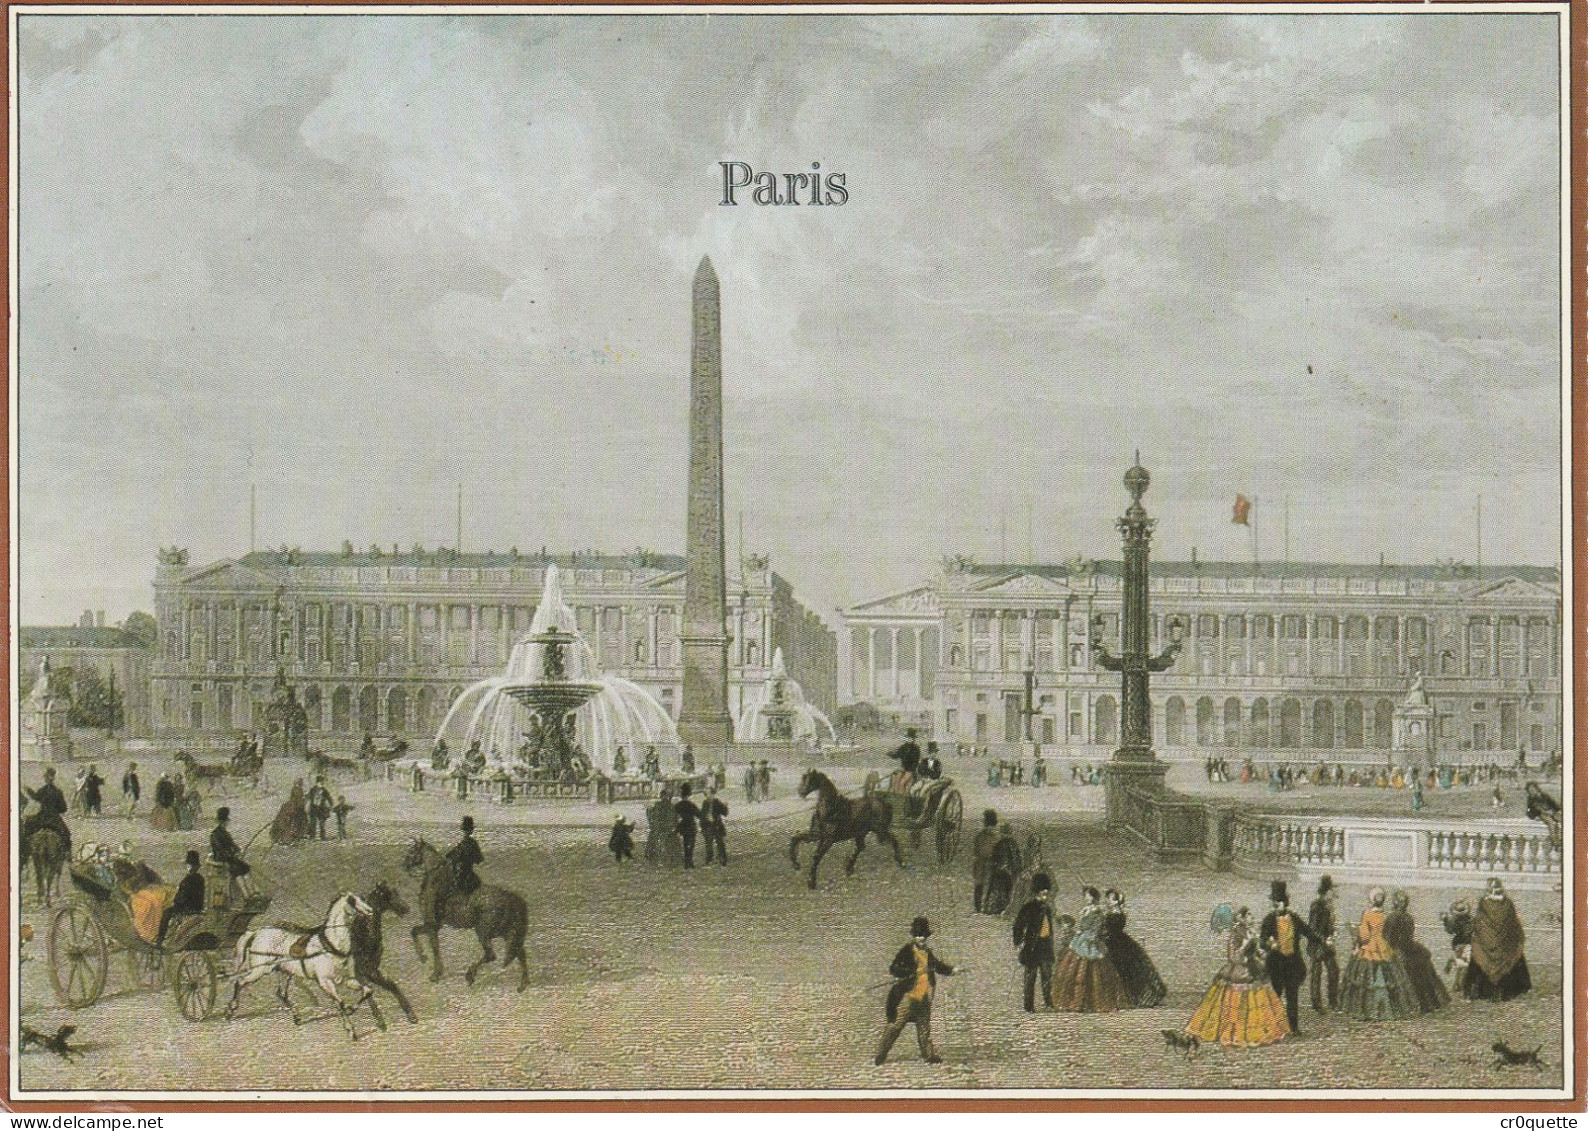 # 75000 PARIS / CHAMPS ELYSEES  En 19 CARTES POSTALES De 1902 à 1950 - Champs-Elysées